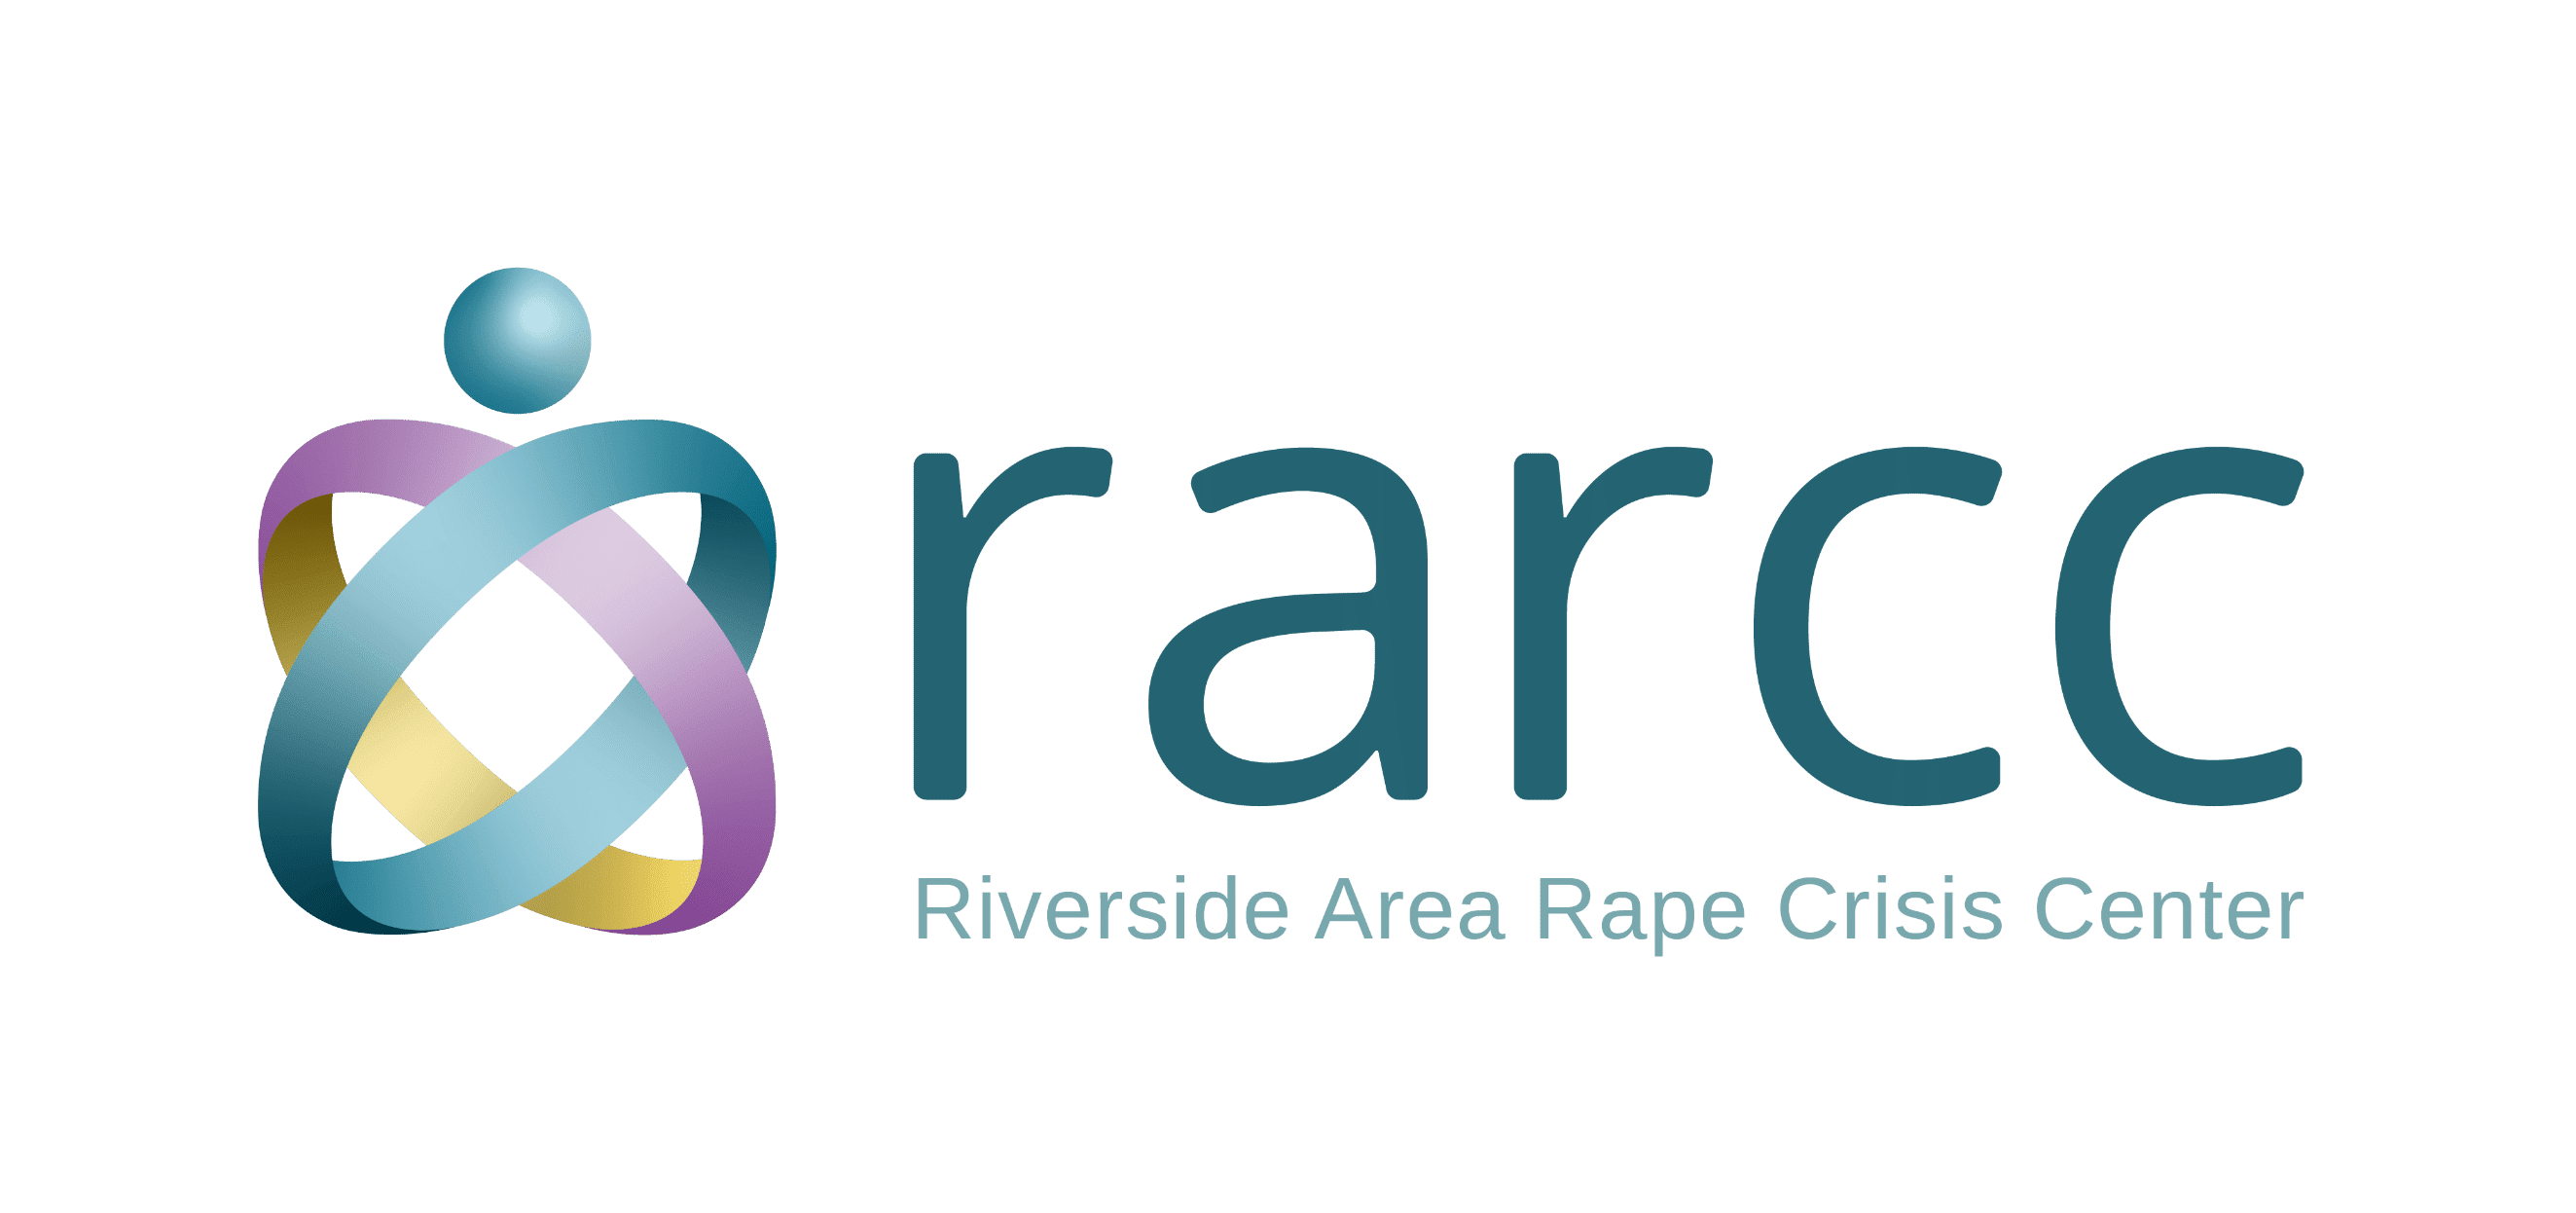 Riverside Area Rape Crisis Center logo